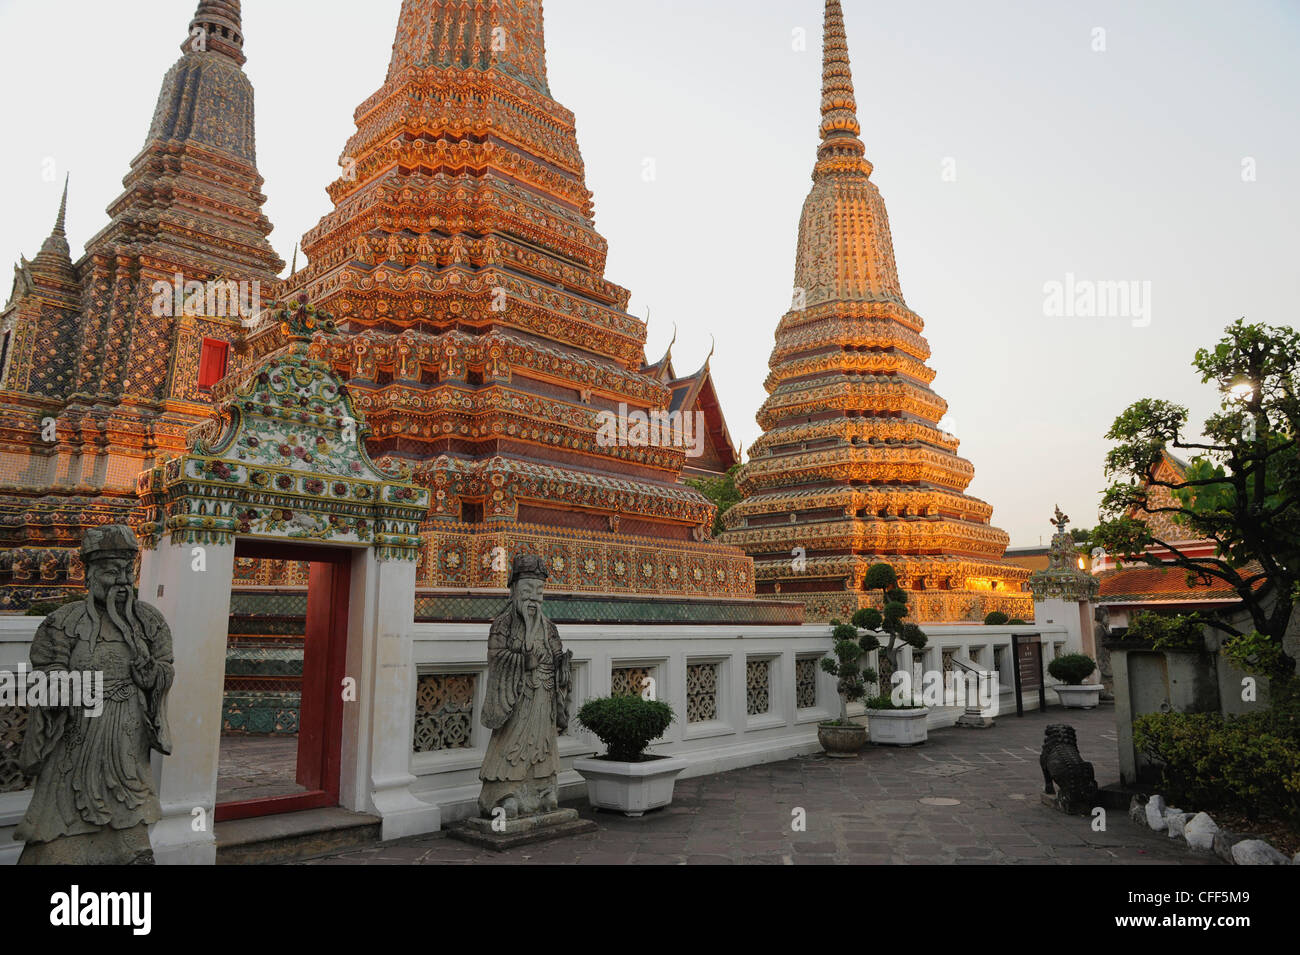 Chedis at the temple of the Reclining Buddha, Wat Pho, Bangkok, Thailand, Asia Stock Photo